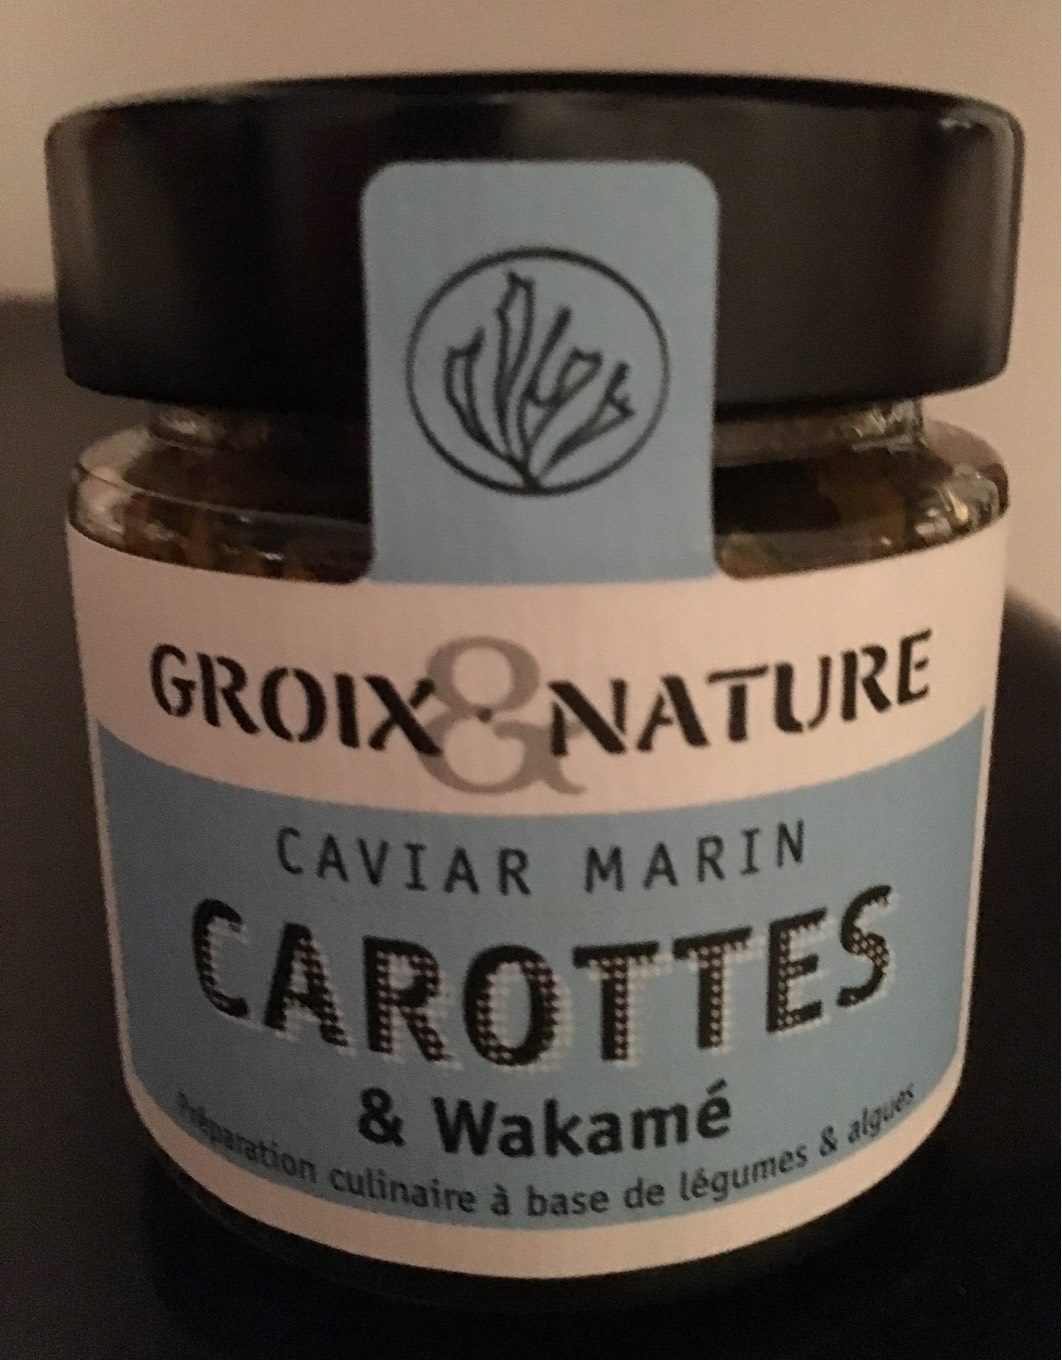 Caviar marin carottes et wakamé - Produit